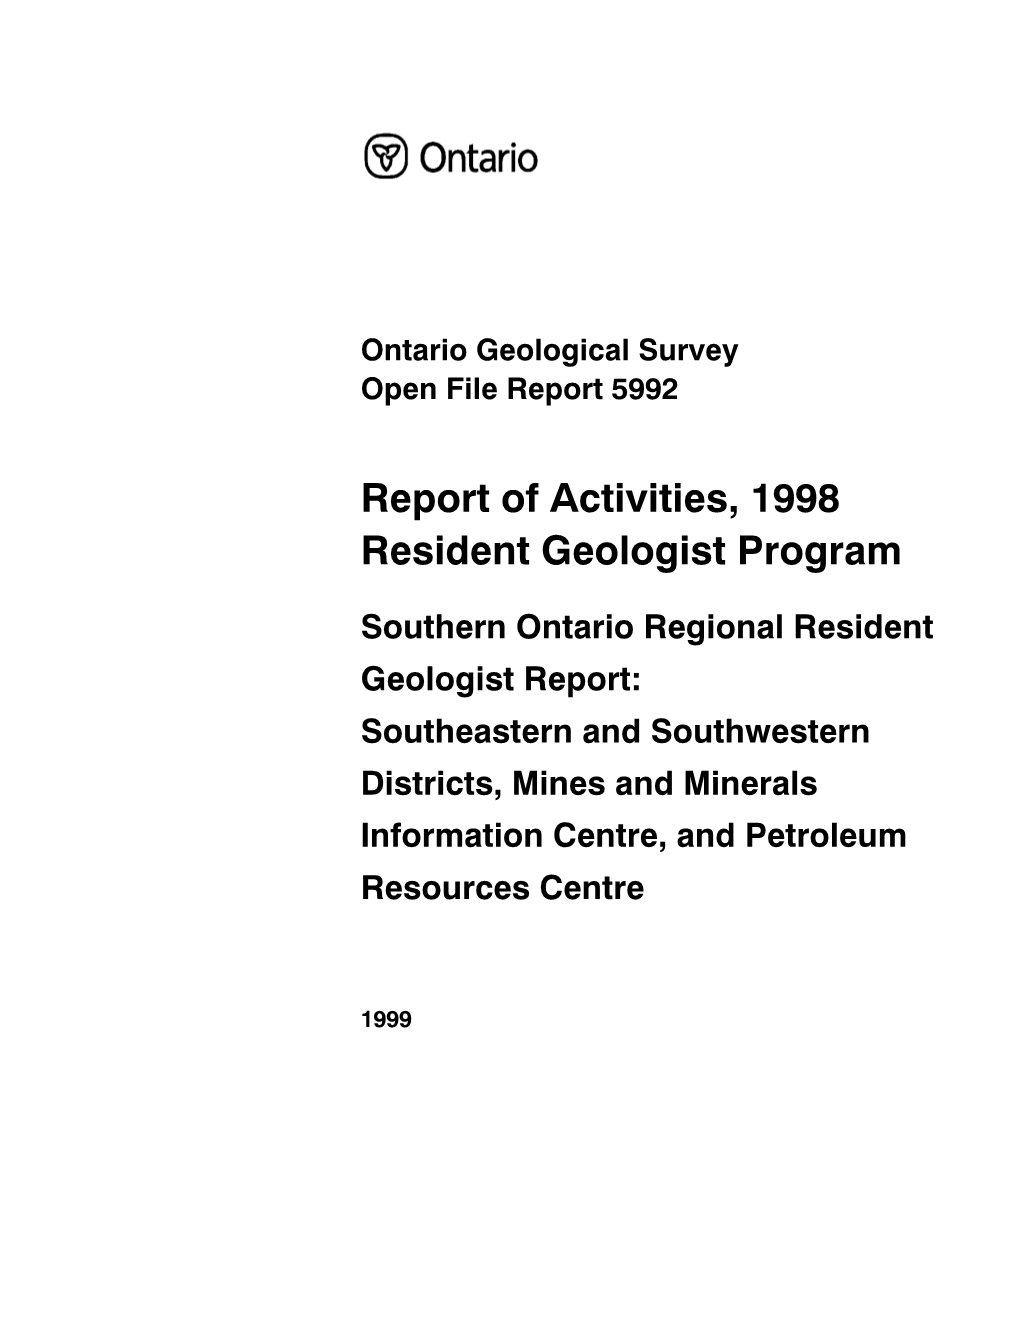 Report of Activities 1998